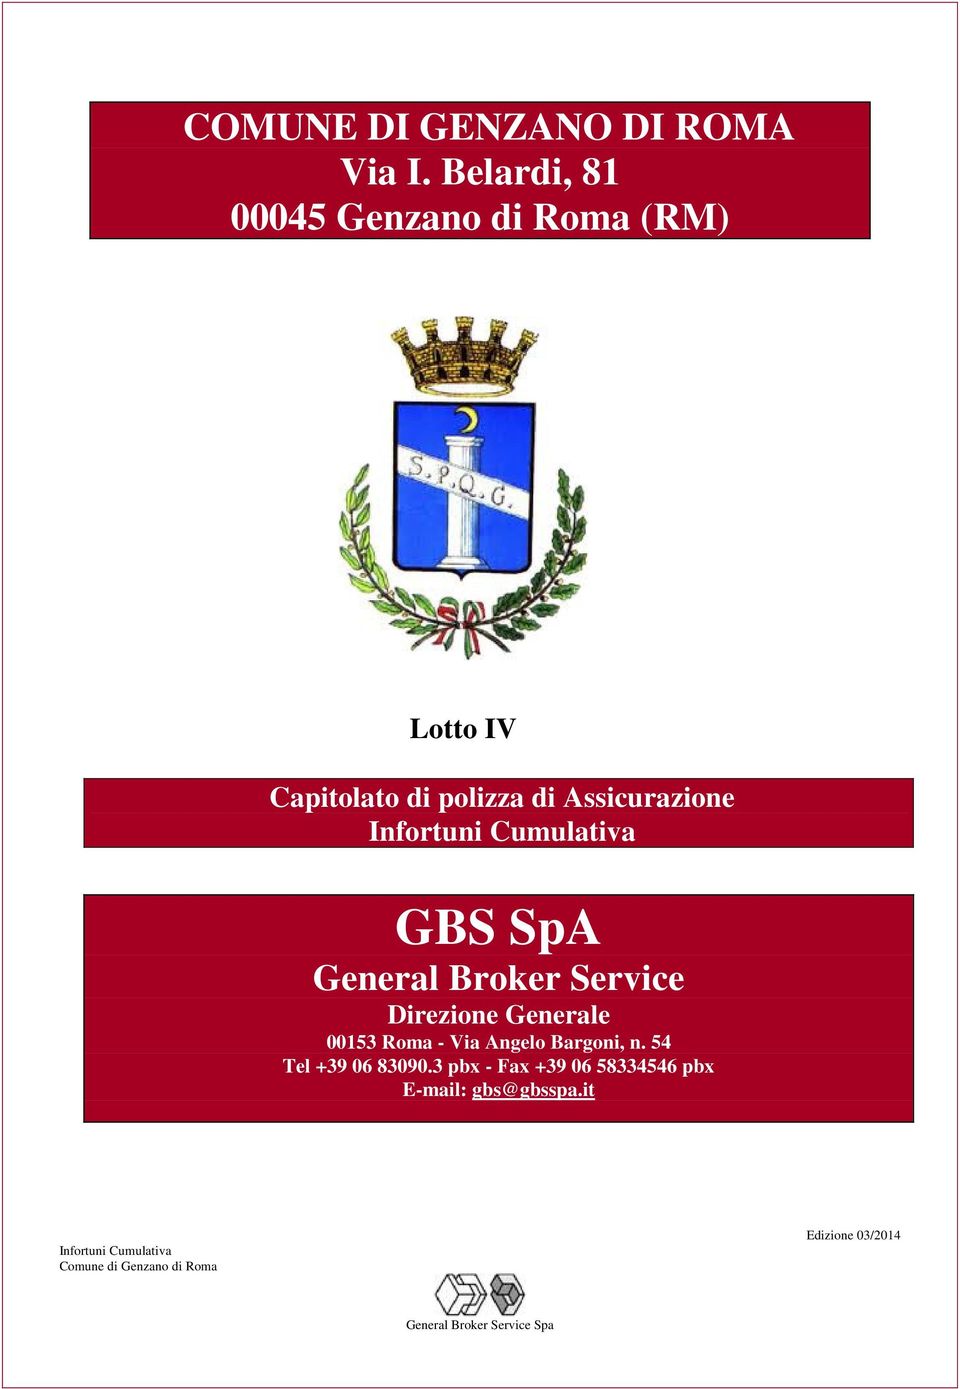 Assicurazione GBS SpA General Broker Service Direzione Generale 00153